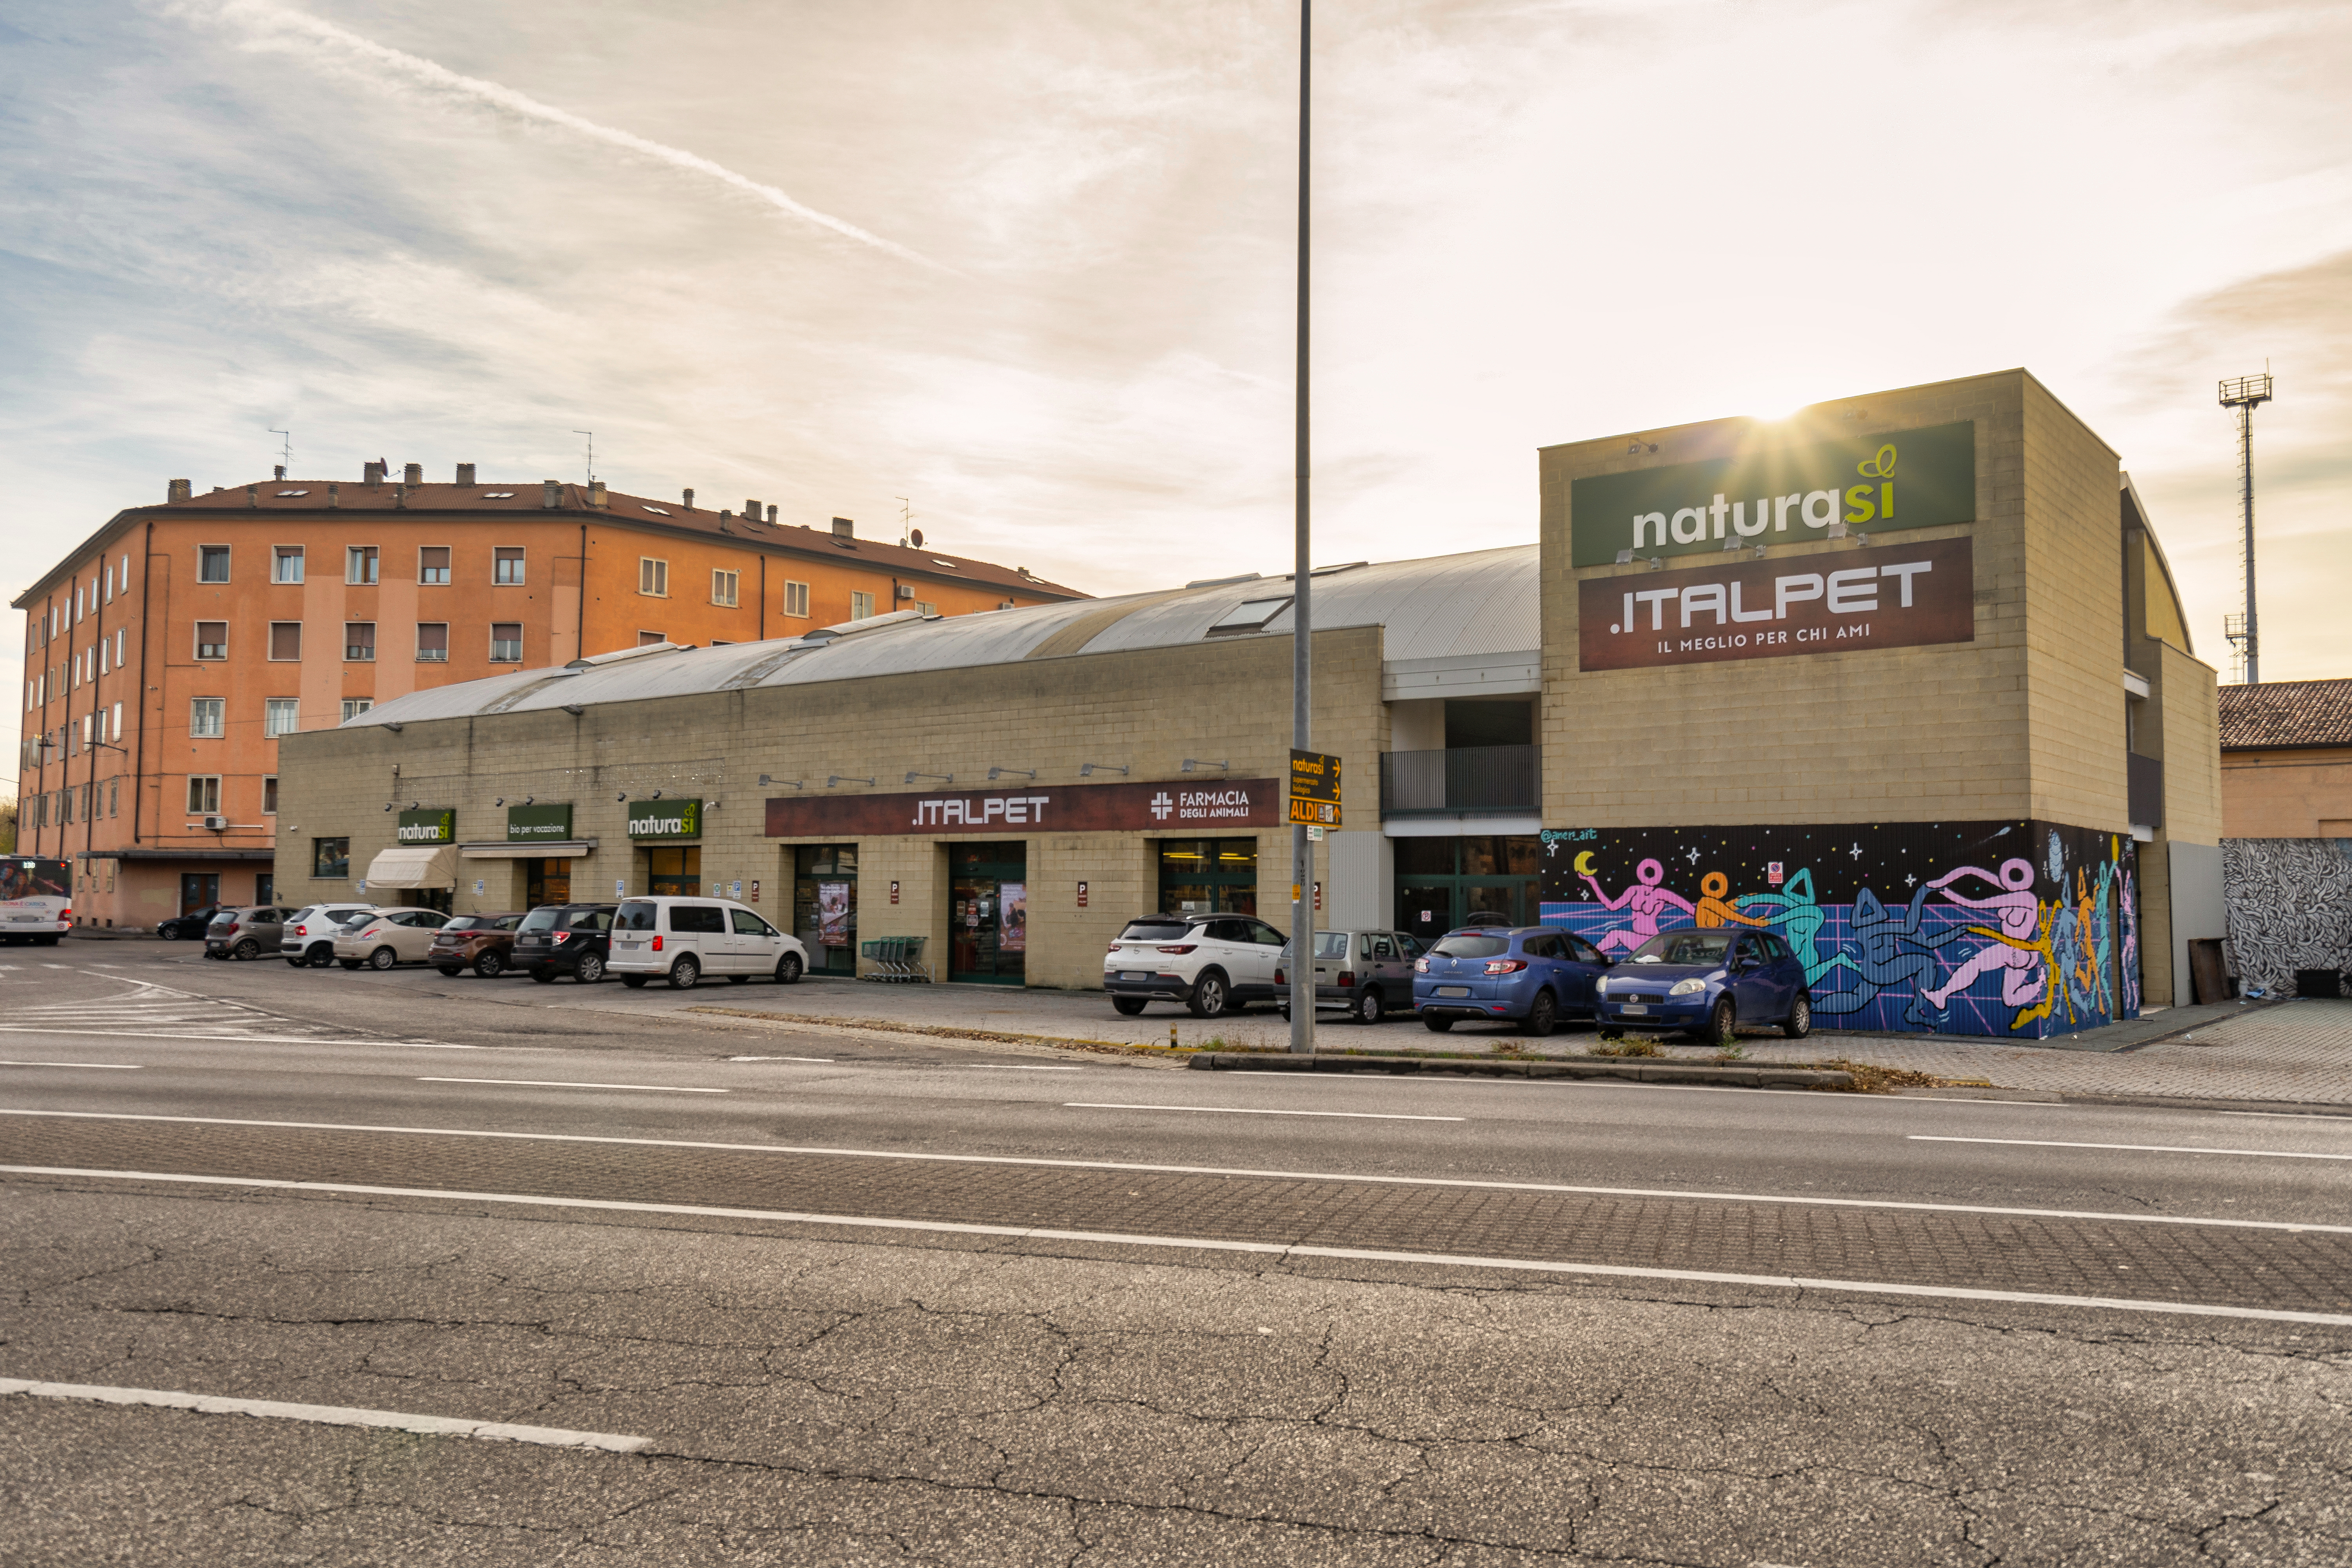 Immobile commerciale Italpet a reddito in vendita borgo venezia verona